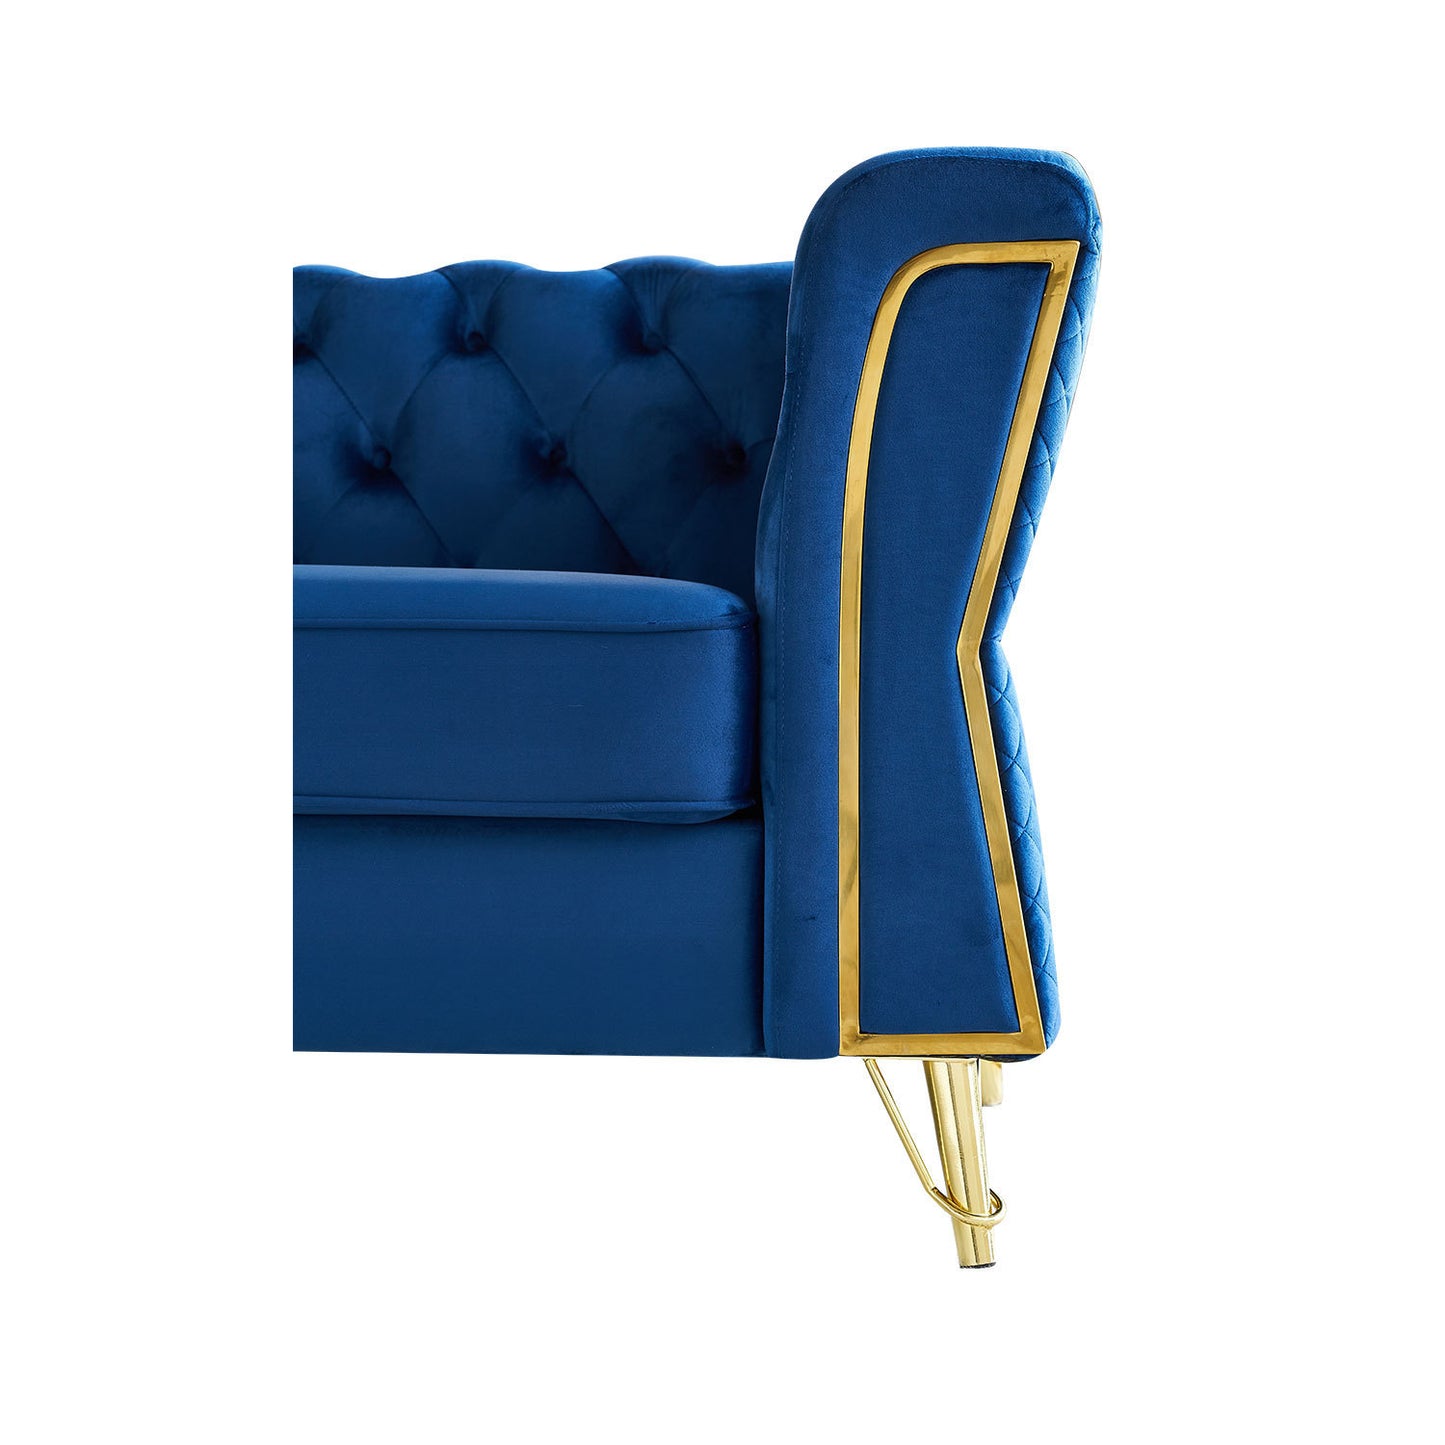 Modern Tufted Velvet Sofa 87.4 inch for Living Room Blue Color